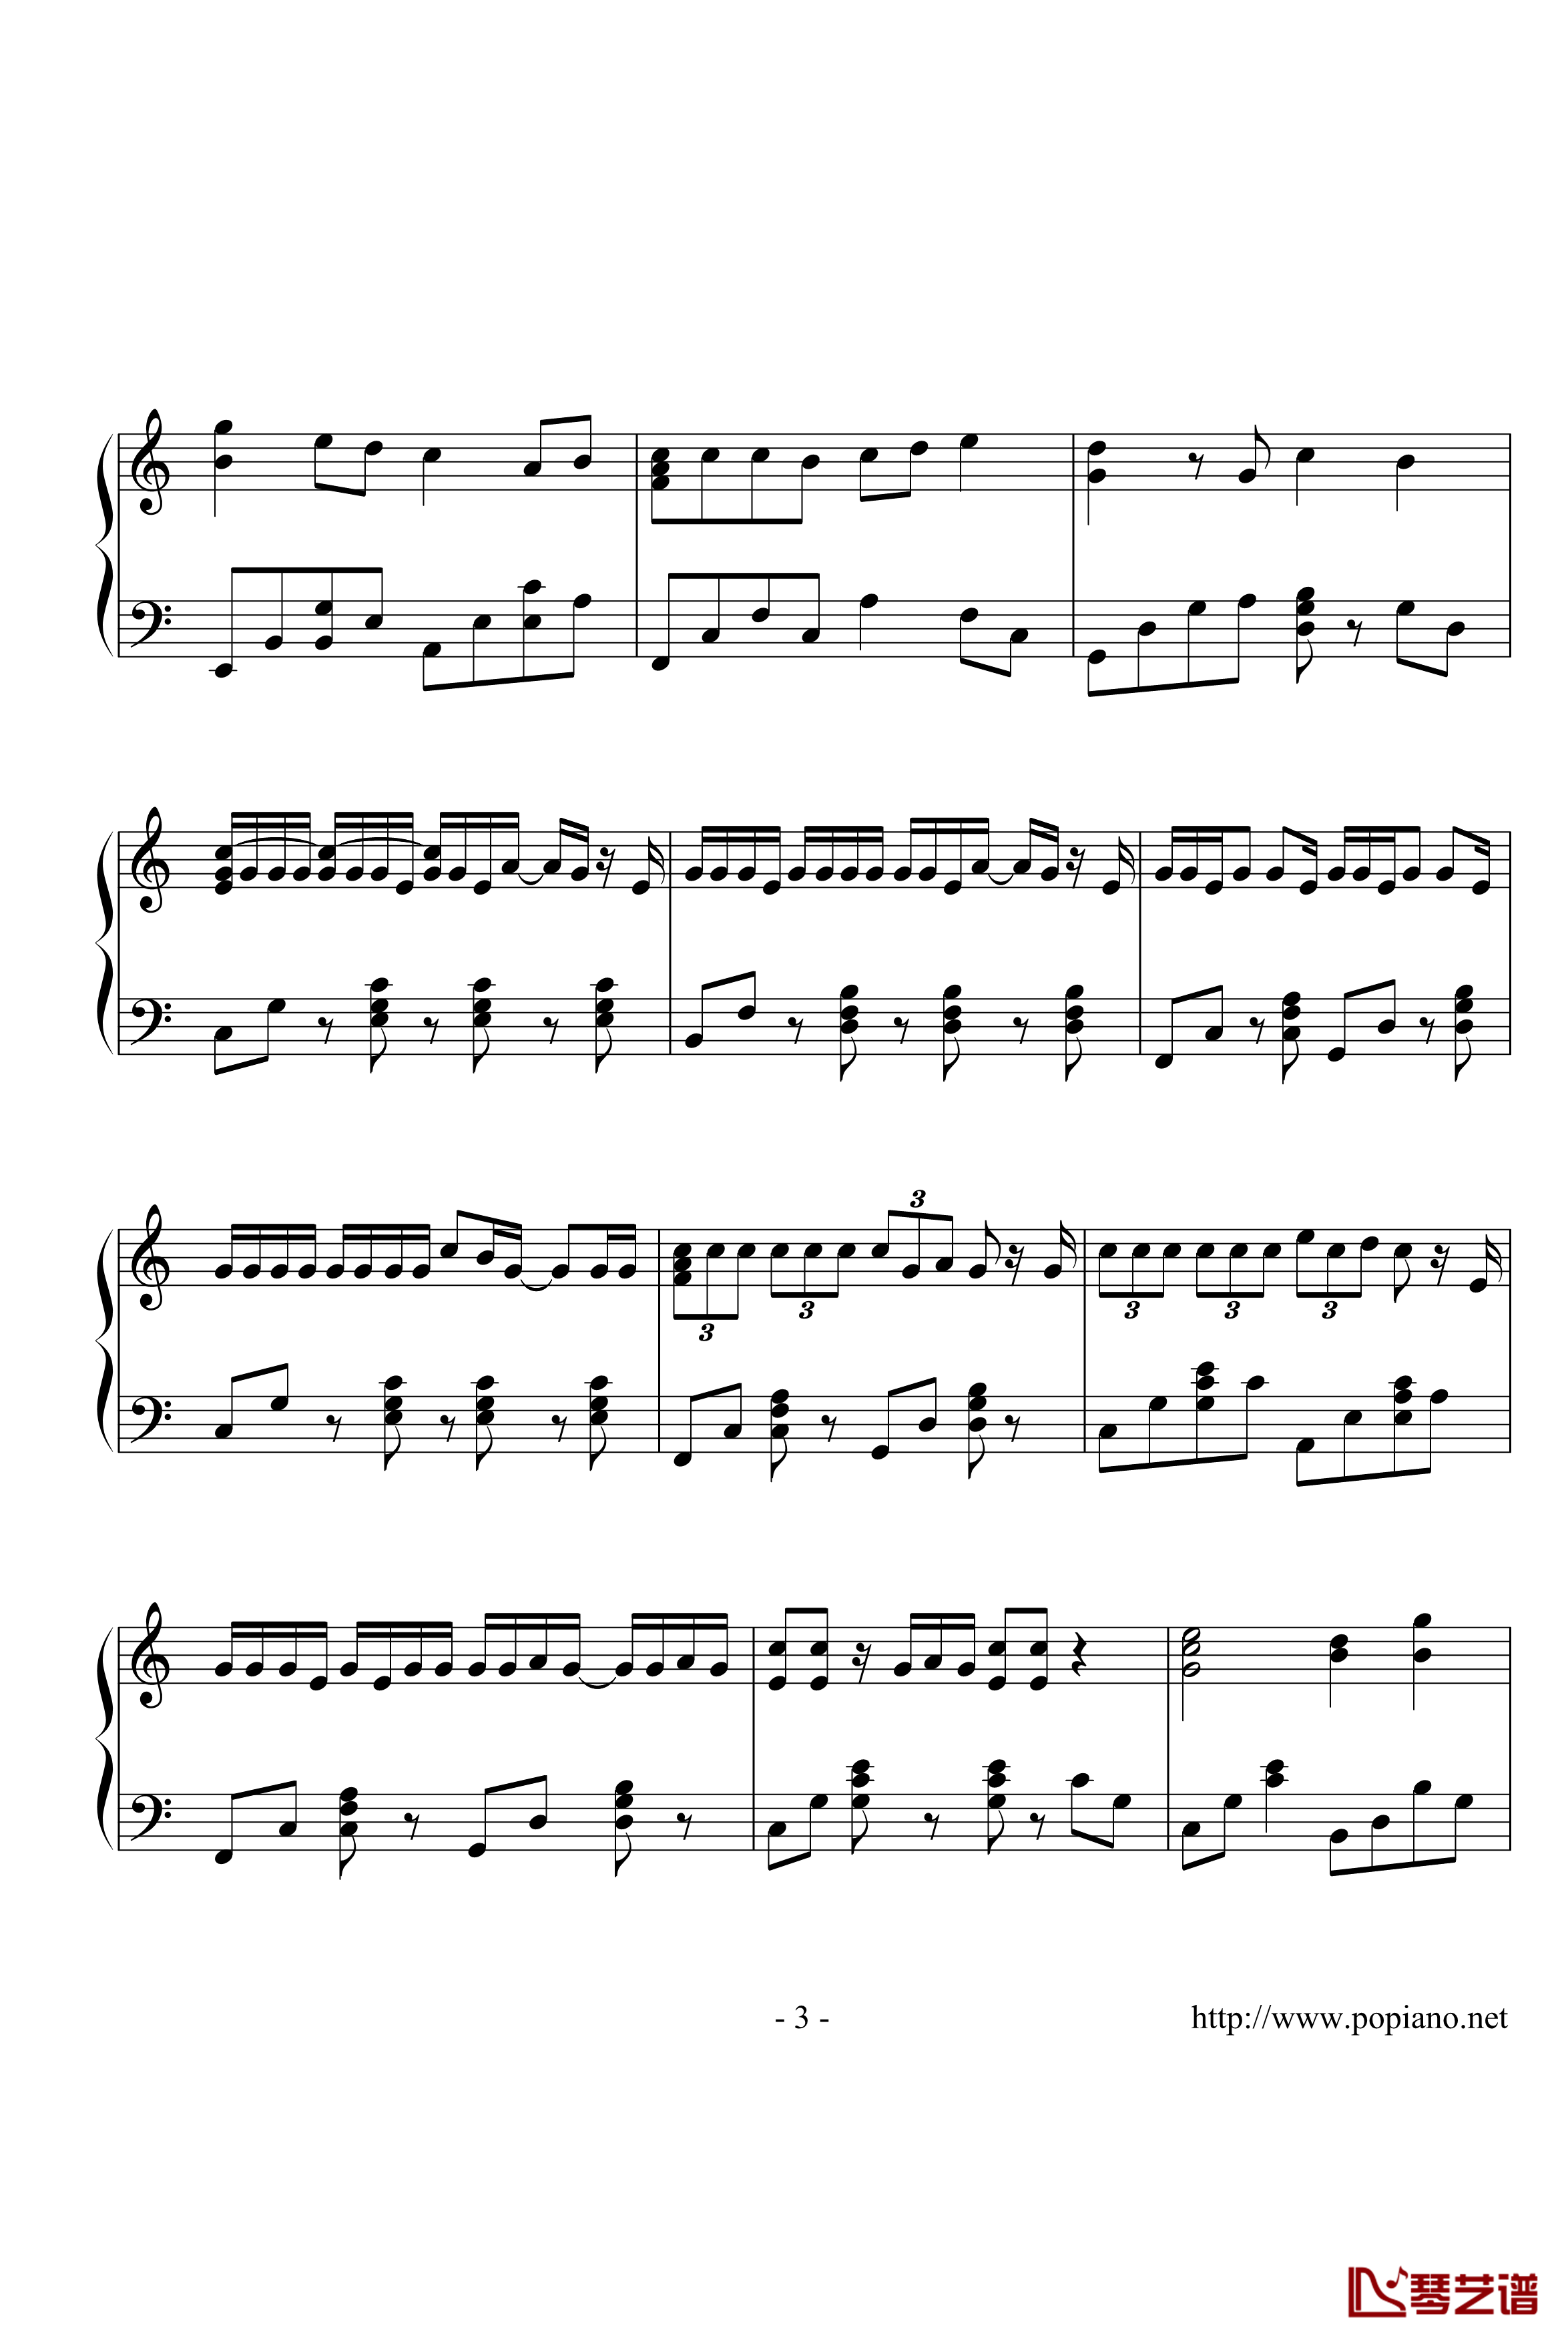 棉花糖钢琴谱-演奏版-至上励合3